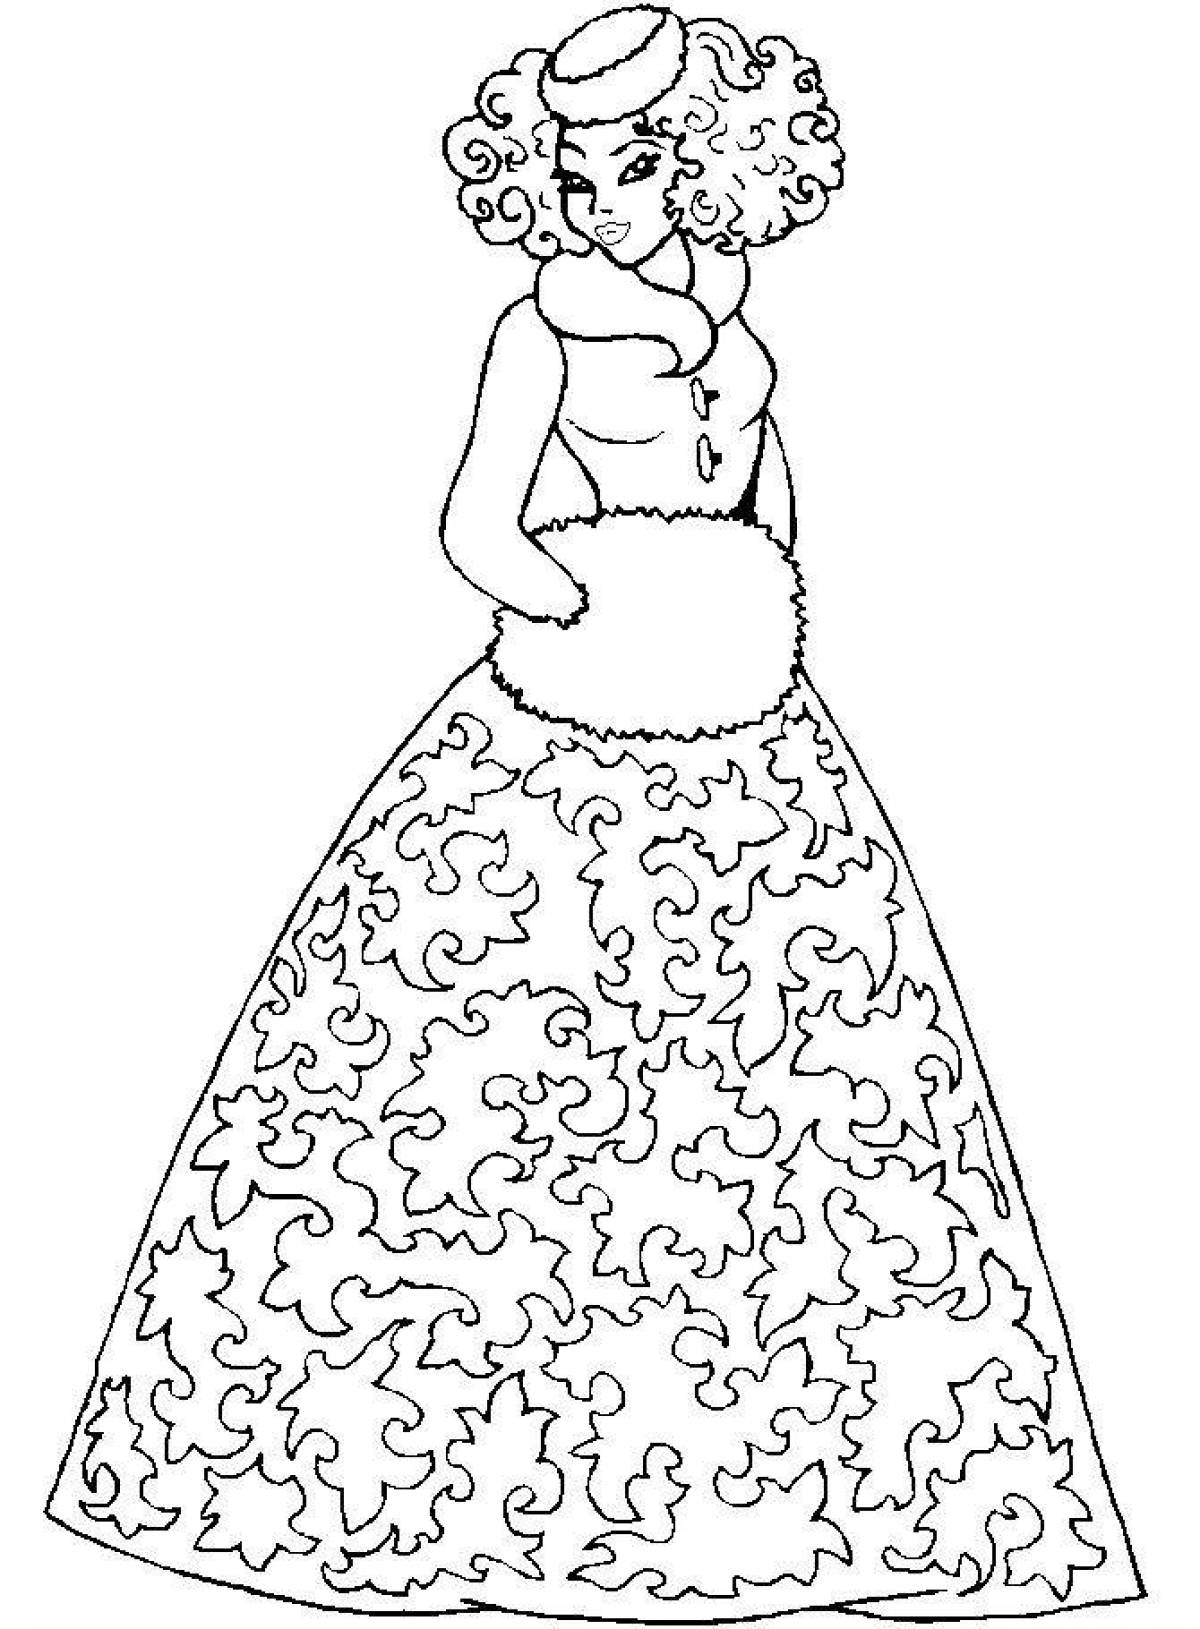 Fun coloring girl in a dress